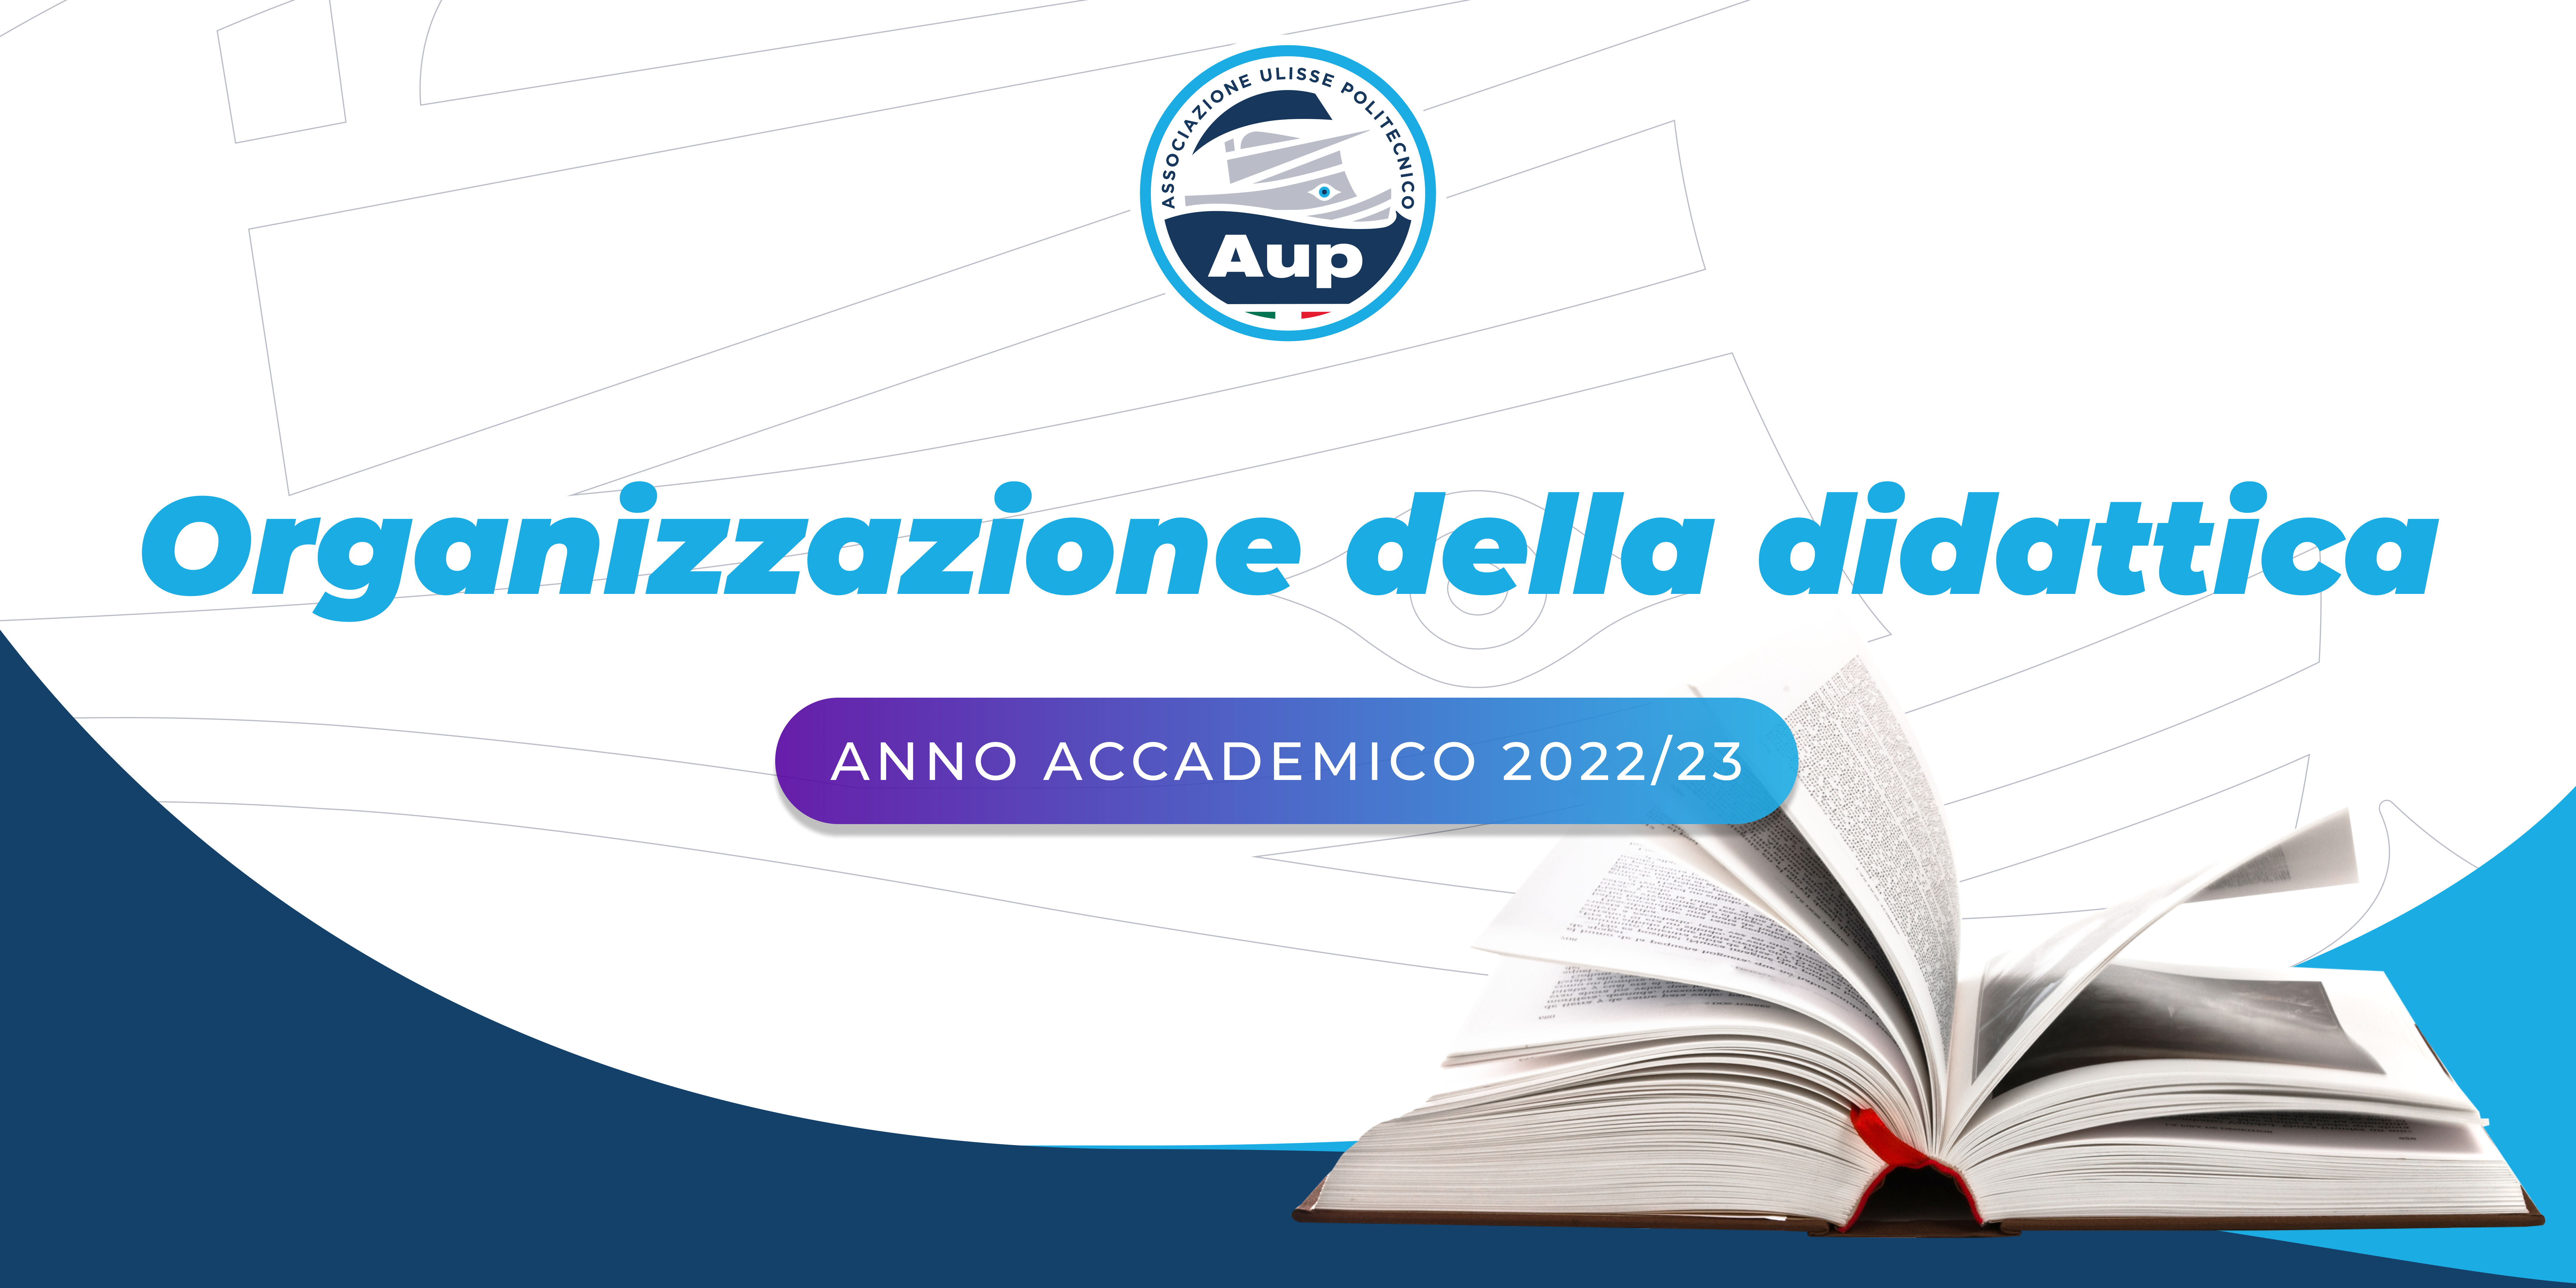 Organizzazione della didattica anno accademico 2022/23